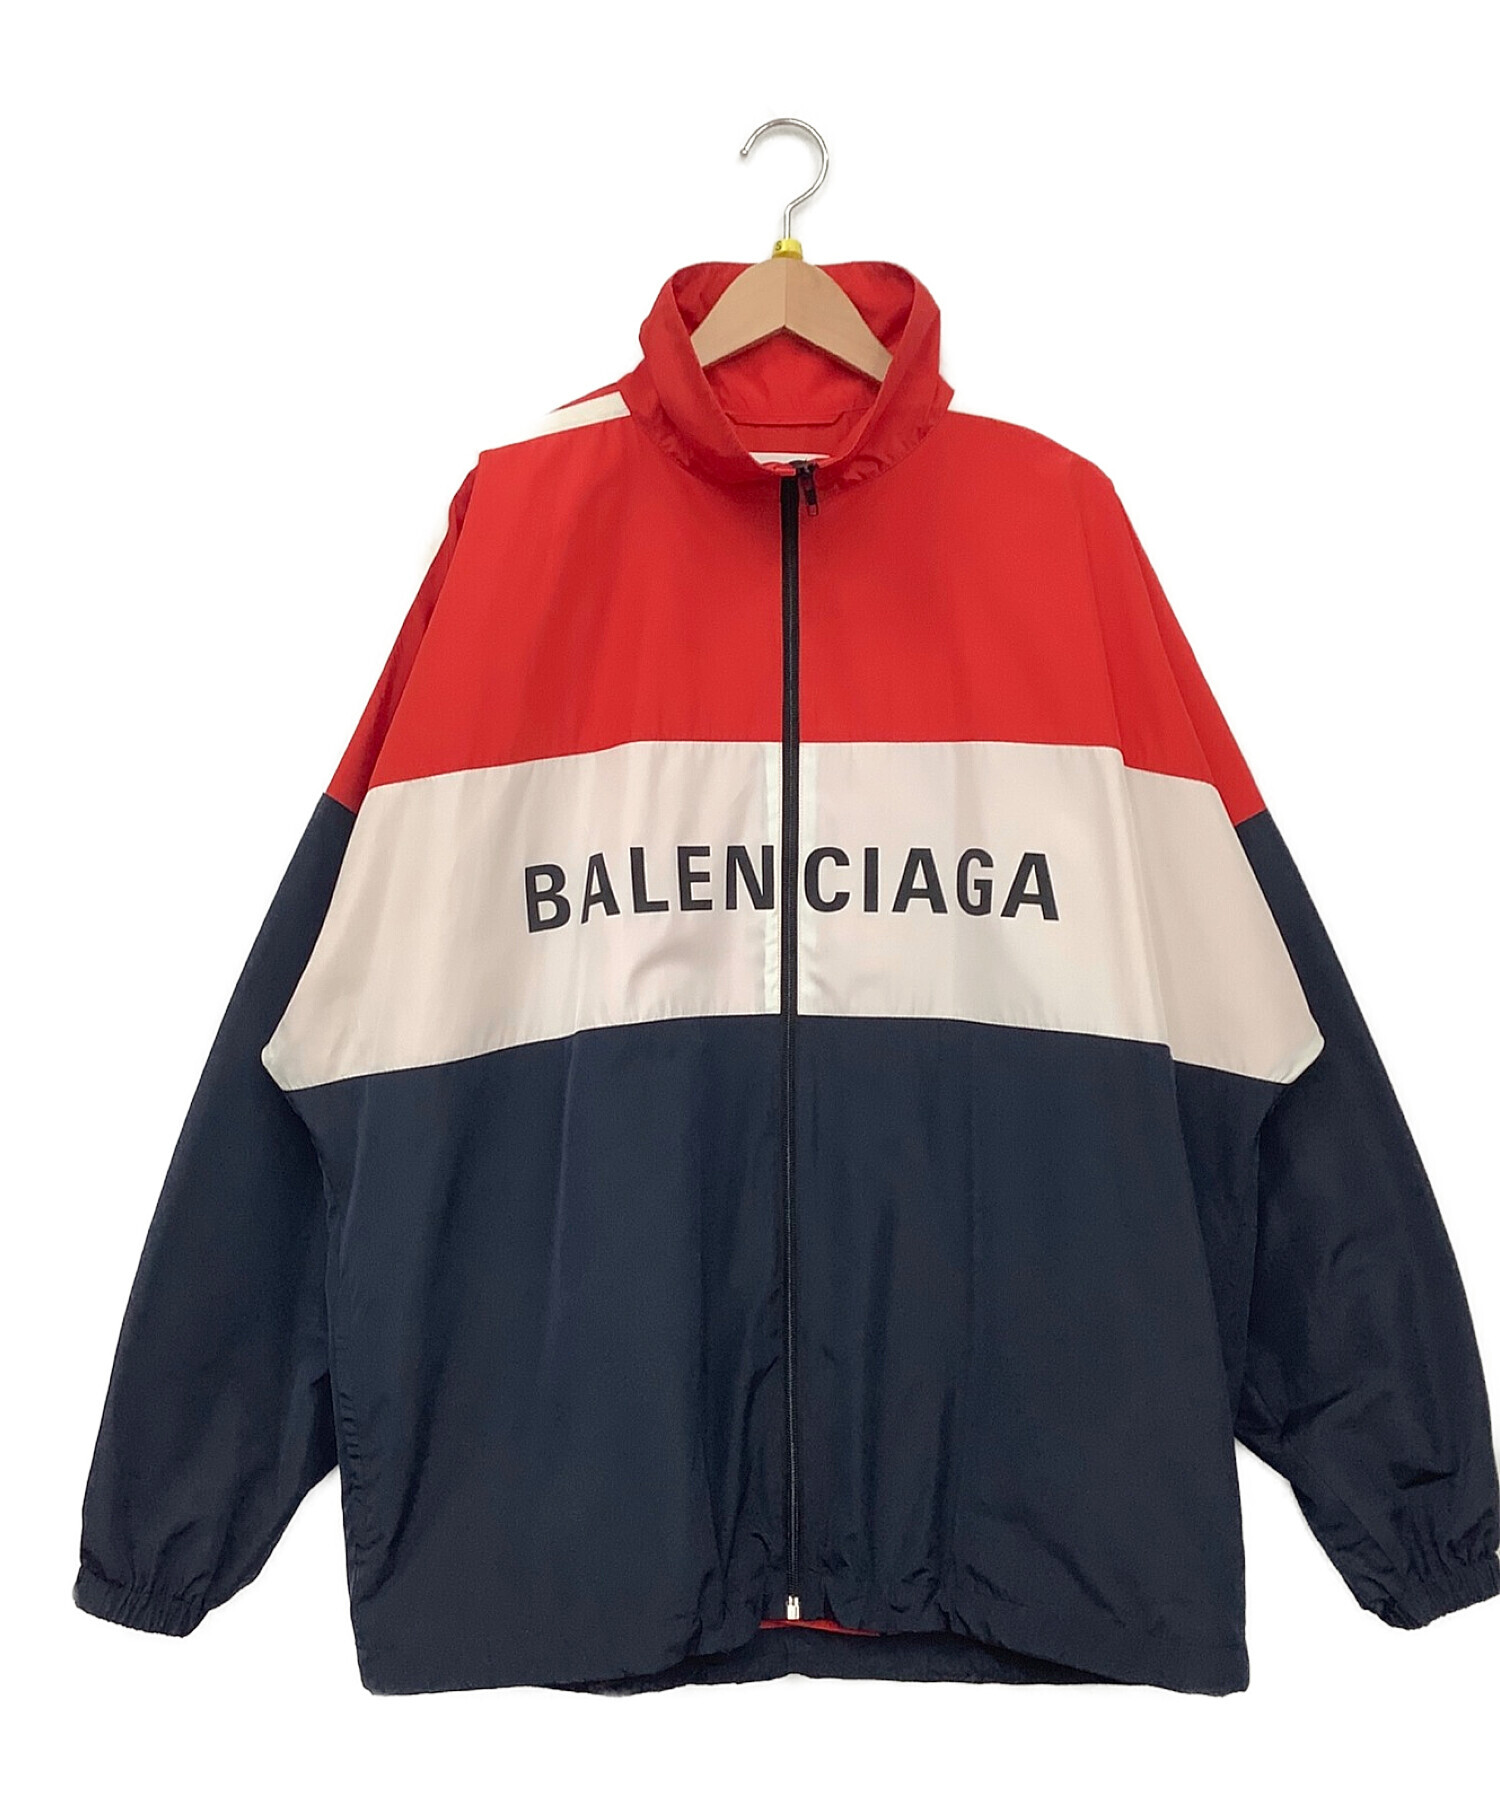 専門店の安心の1ヶ月保証付 Balenciaga バレンシアガ ポプリンシャツ34